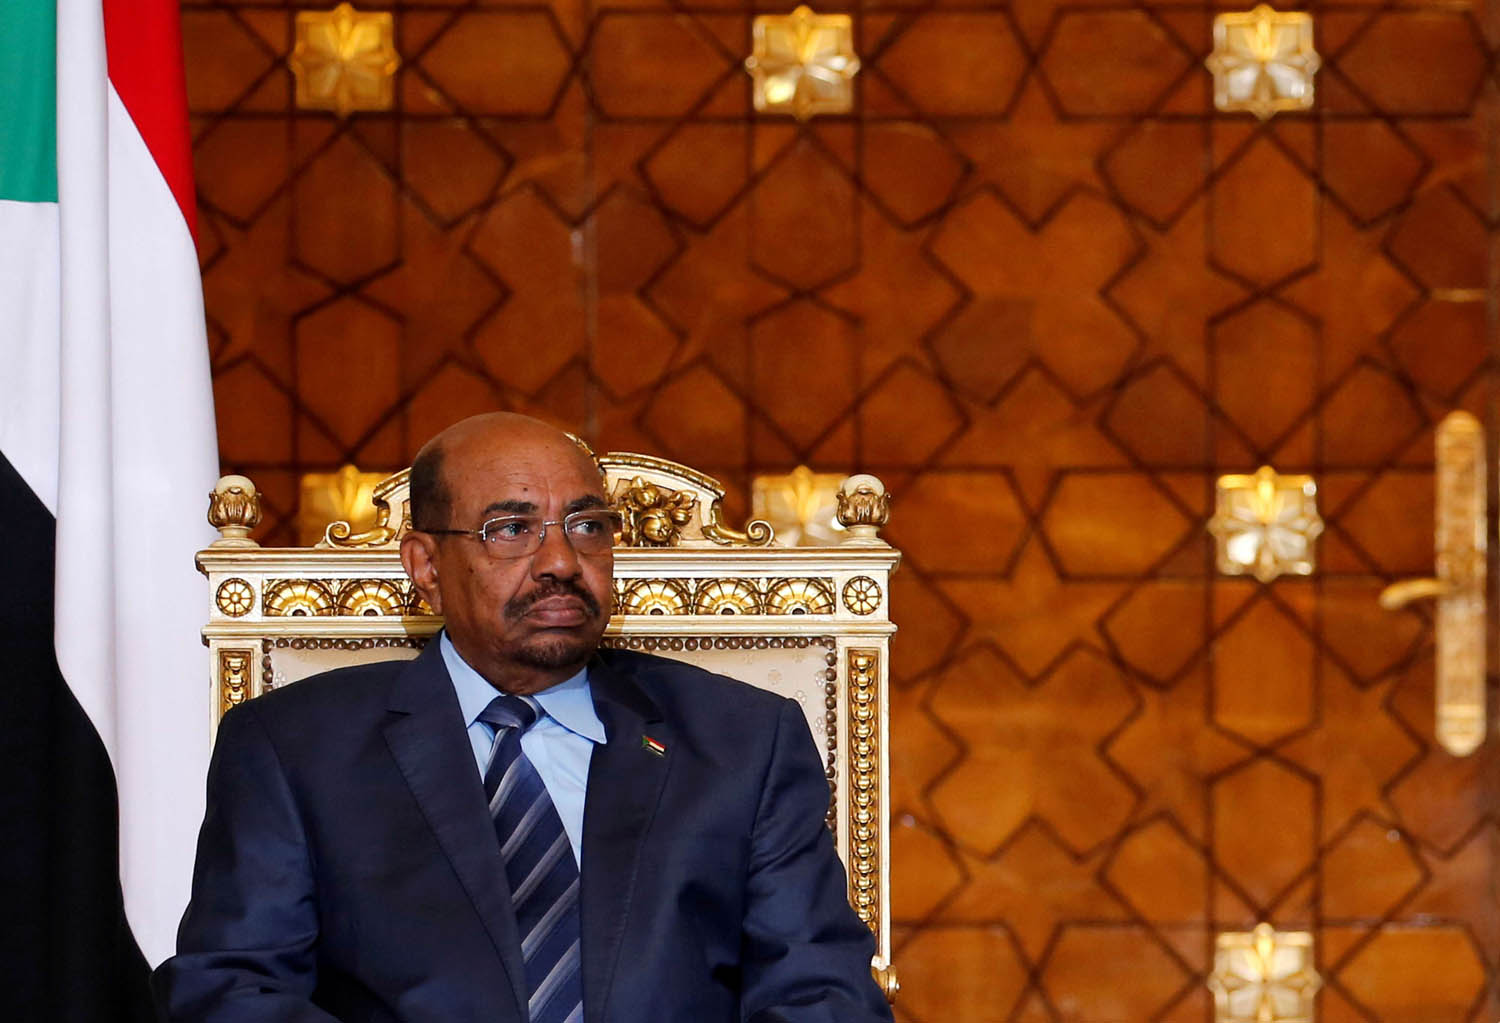 الرئيس السوداني السابق عمر البشير